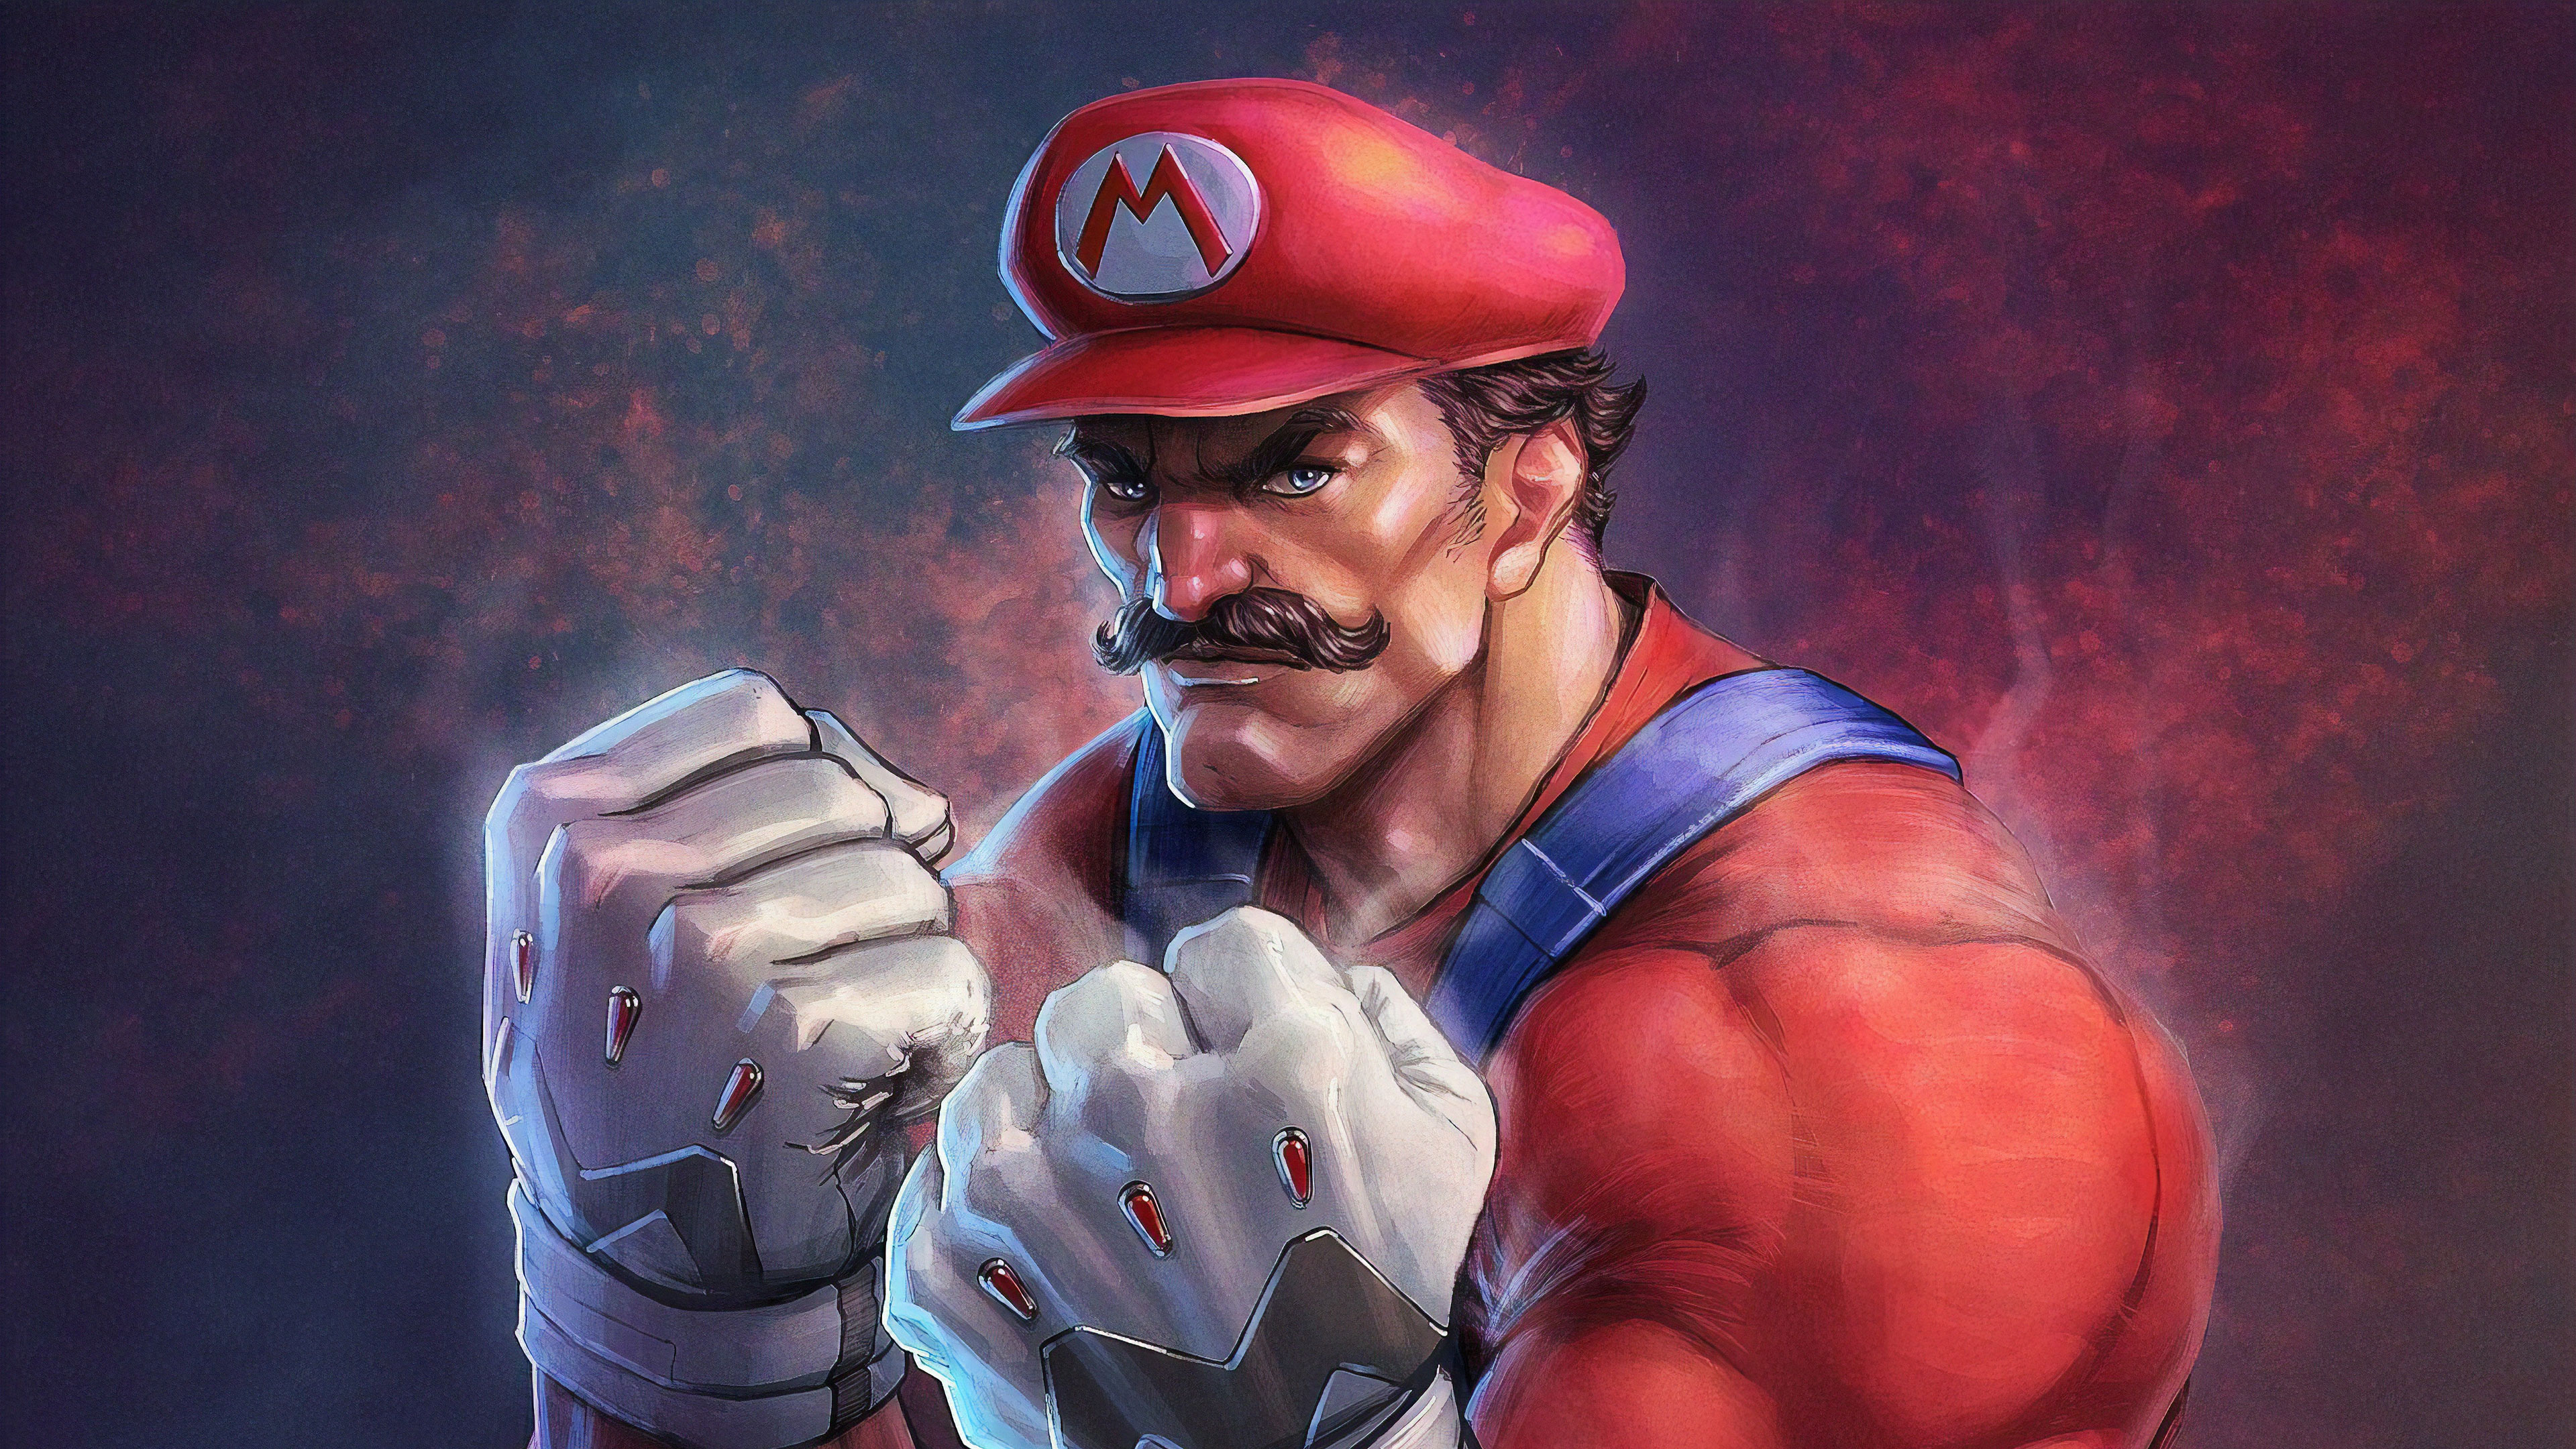 Mario Super Mario Bros 3840x2160